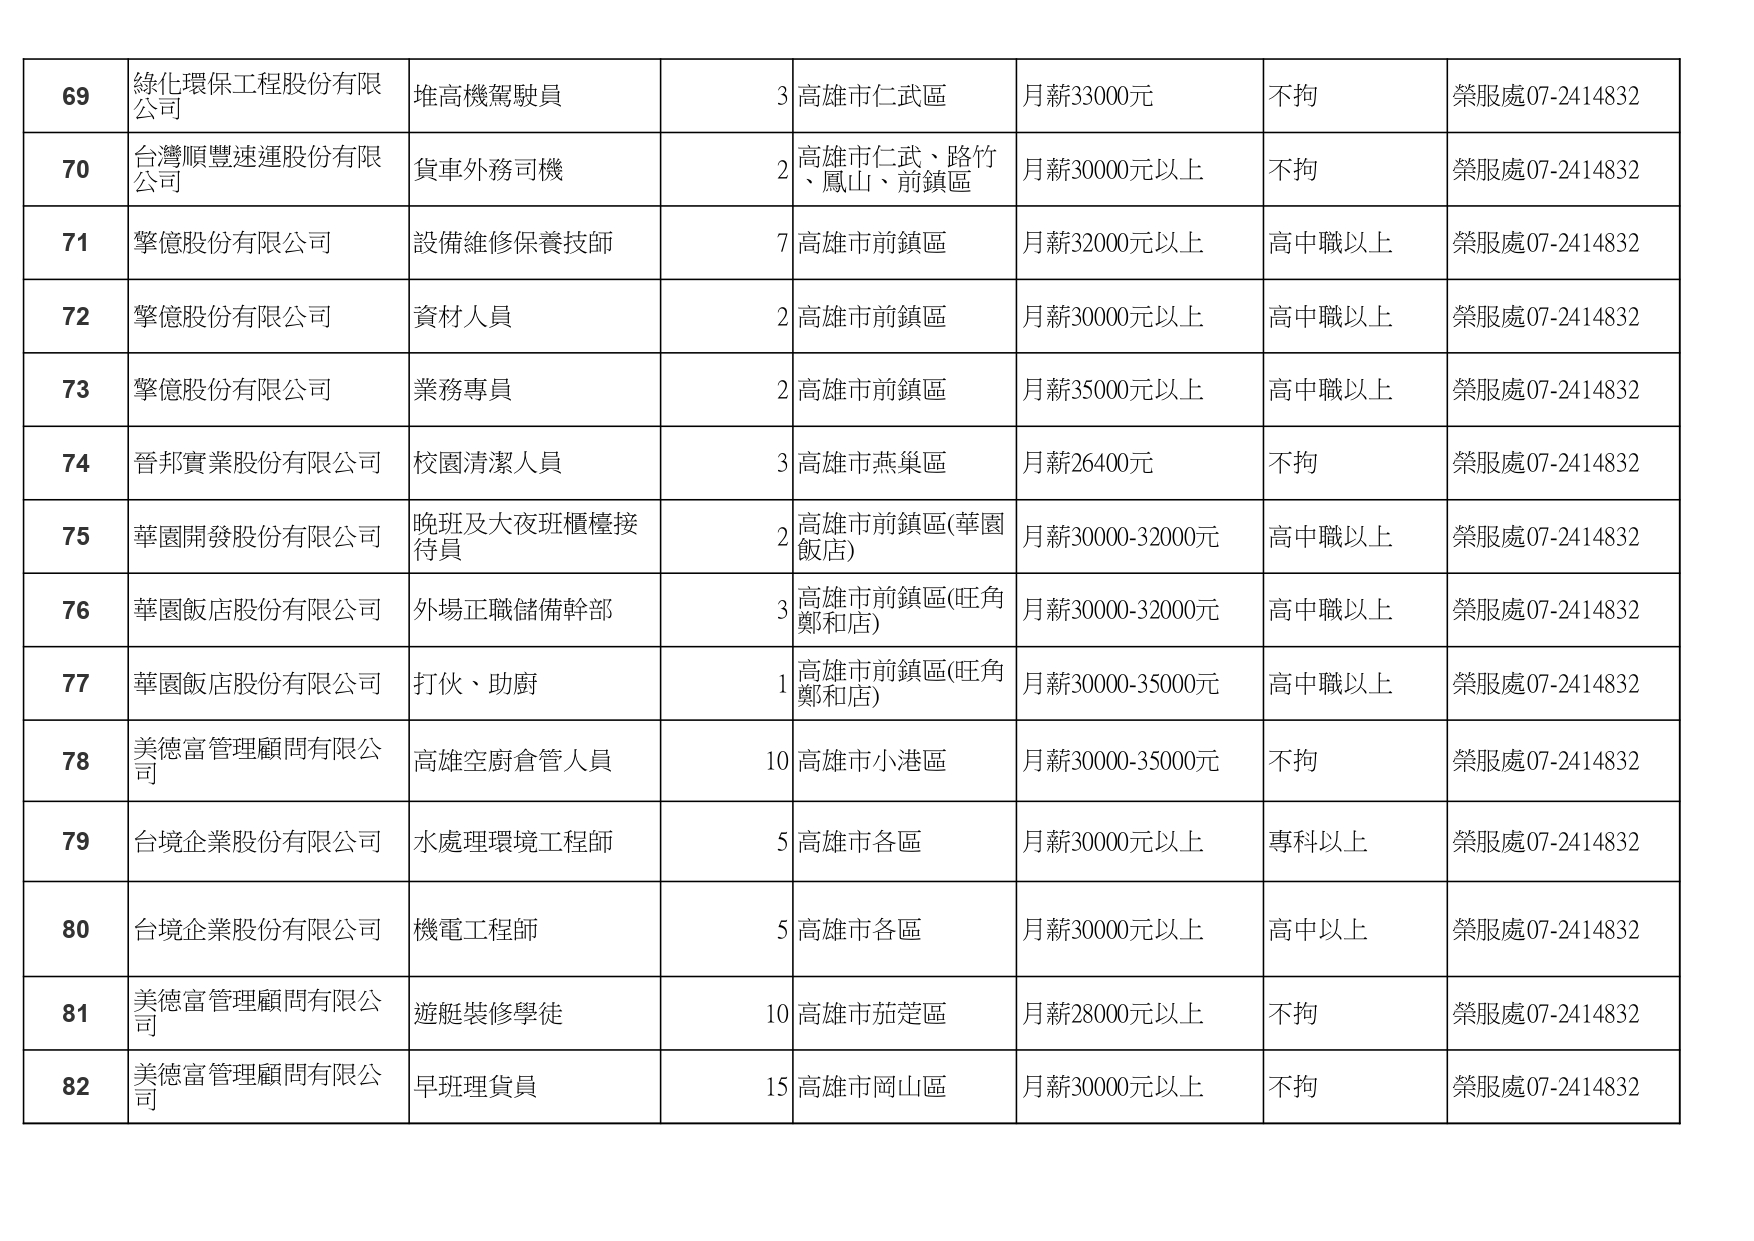 高雄榮服處-廠商職缺列表112.10.3_page-0006